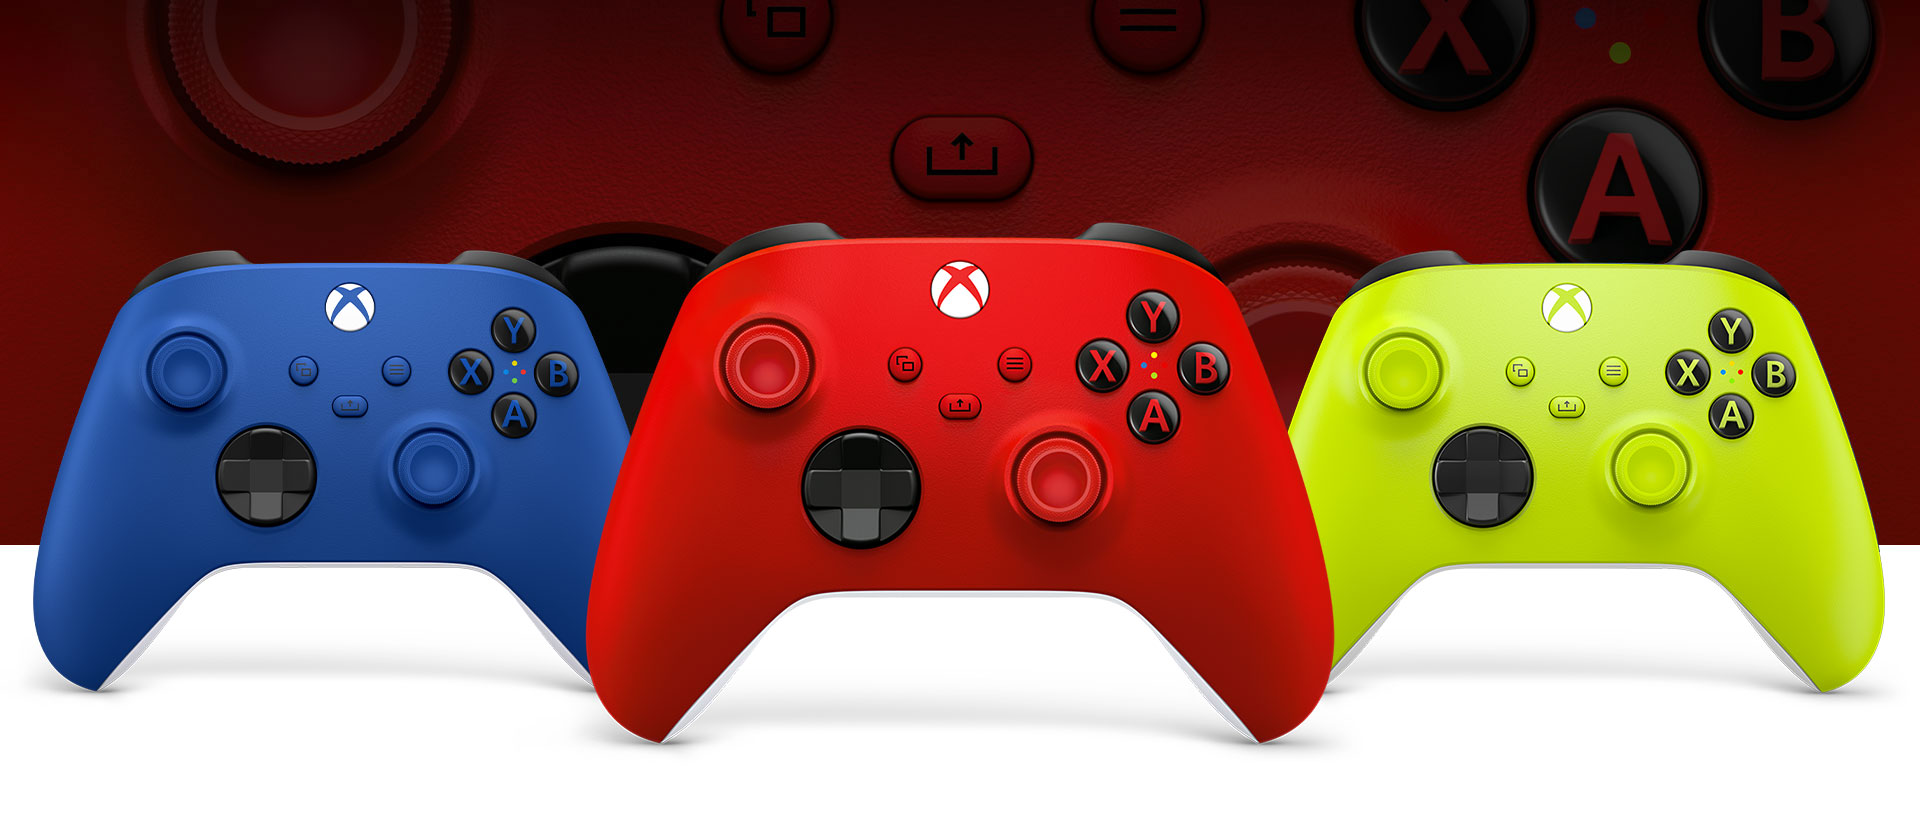 Mando Xbox en rojo latido delante, con un mando de color azul eléctrico a la izquierda y un mando de color voltios eléctricos a la derecha